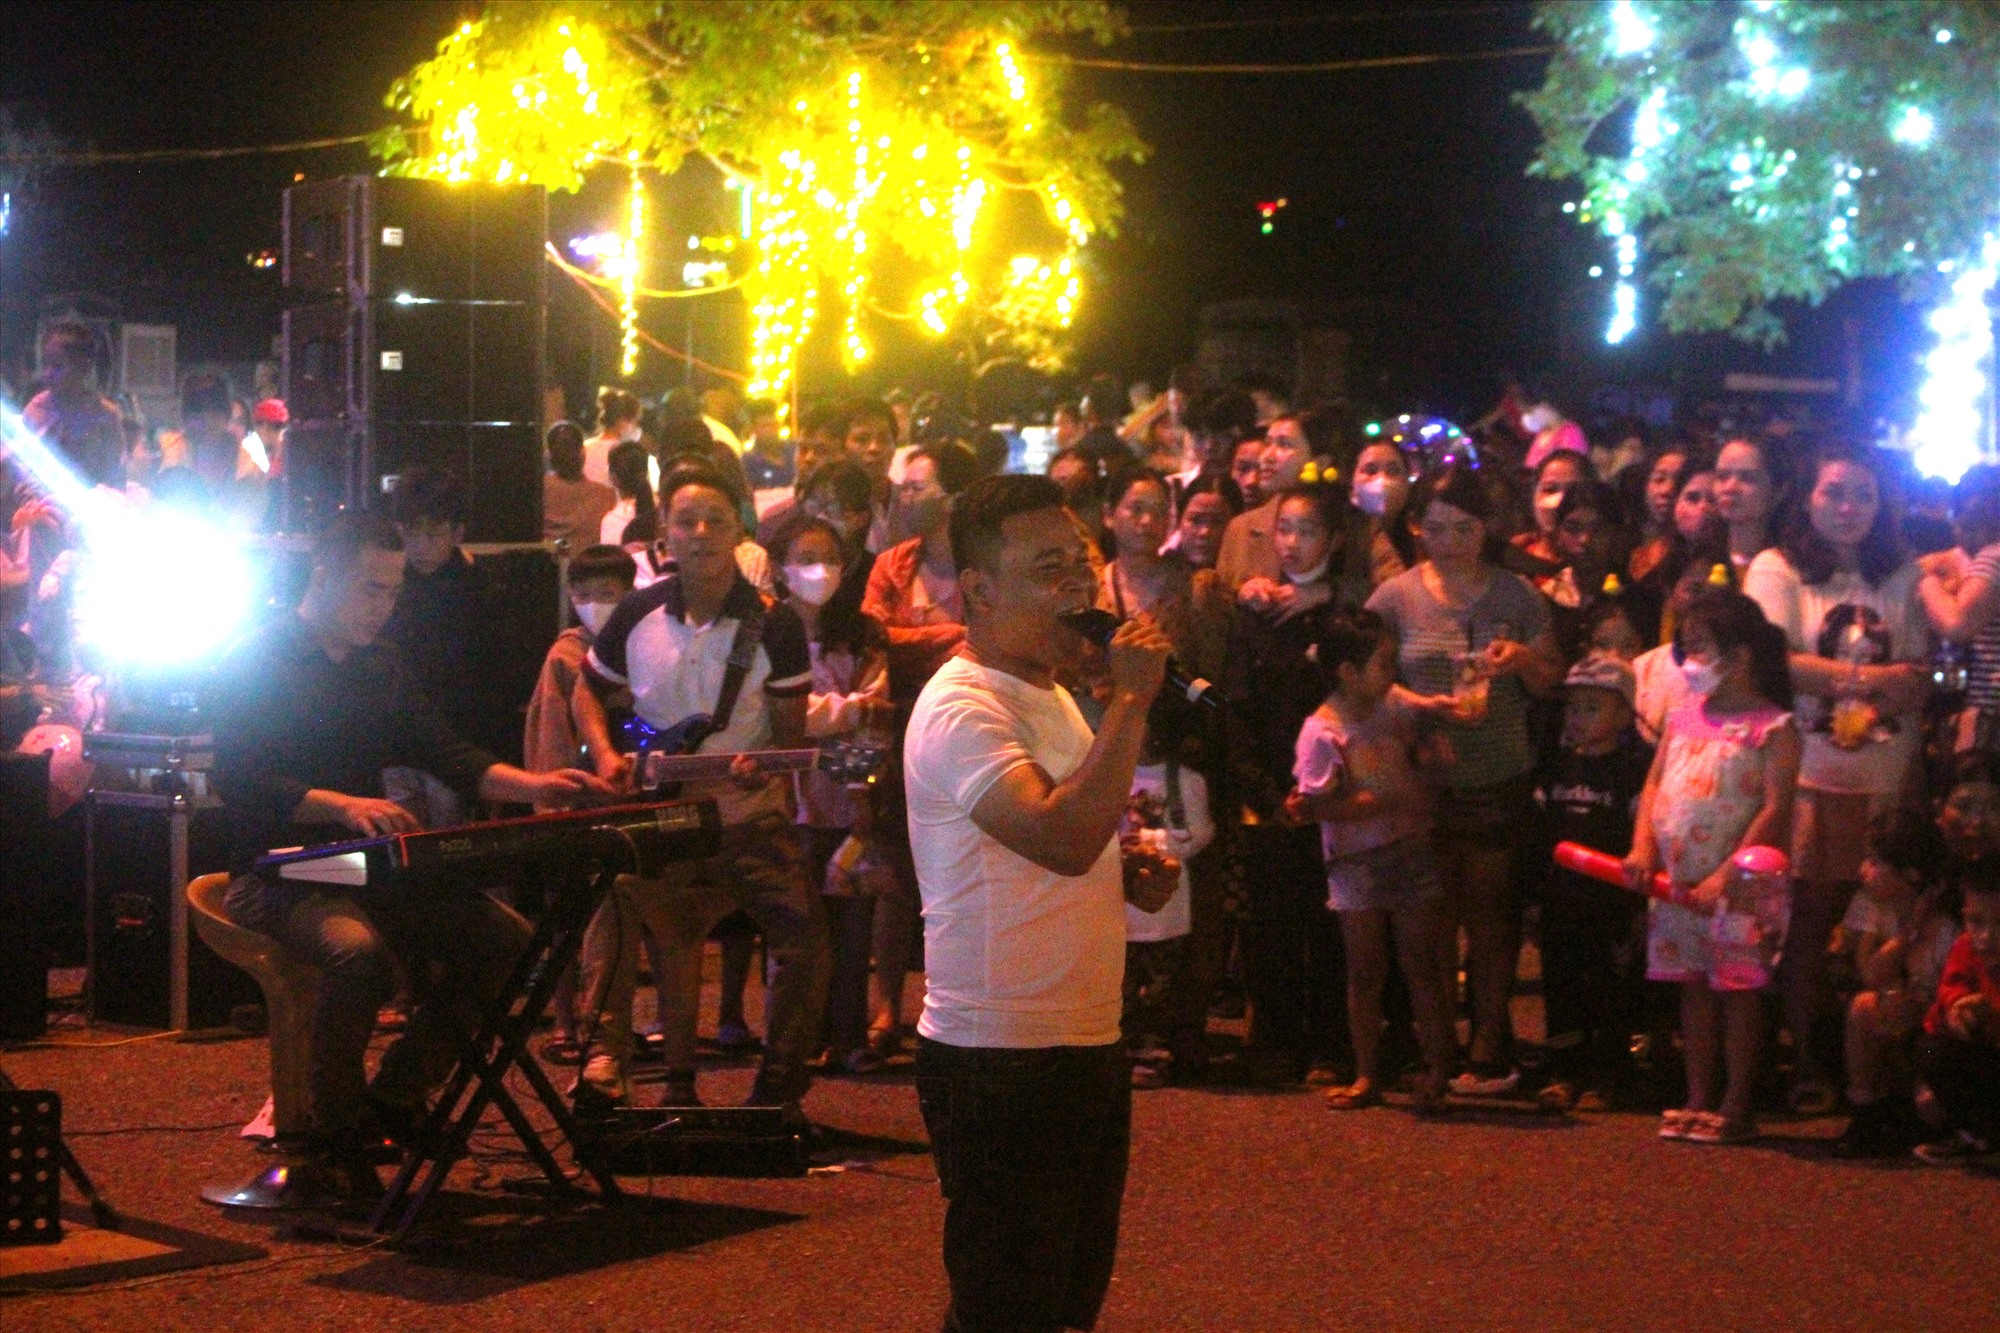 Ngoài phục vụ ẩm thực tuyến đường đi bộ Nguyễn Huệ còn tổ chức không gian lao lưu ẩm nhạc thiện nguyện quyên góp tiền cho người nghèo do Nhóm thiện nguyện Hướng Hóa tổ chức